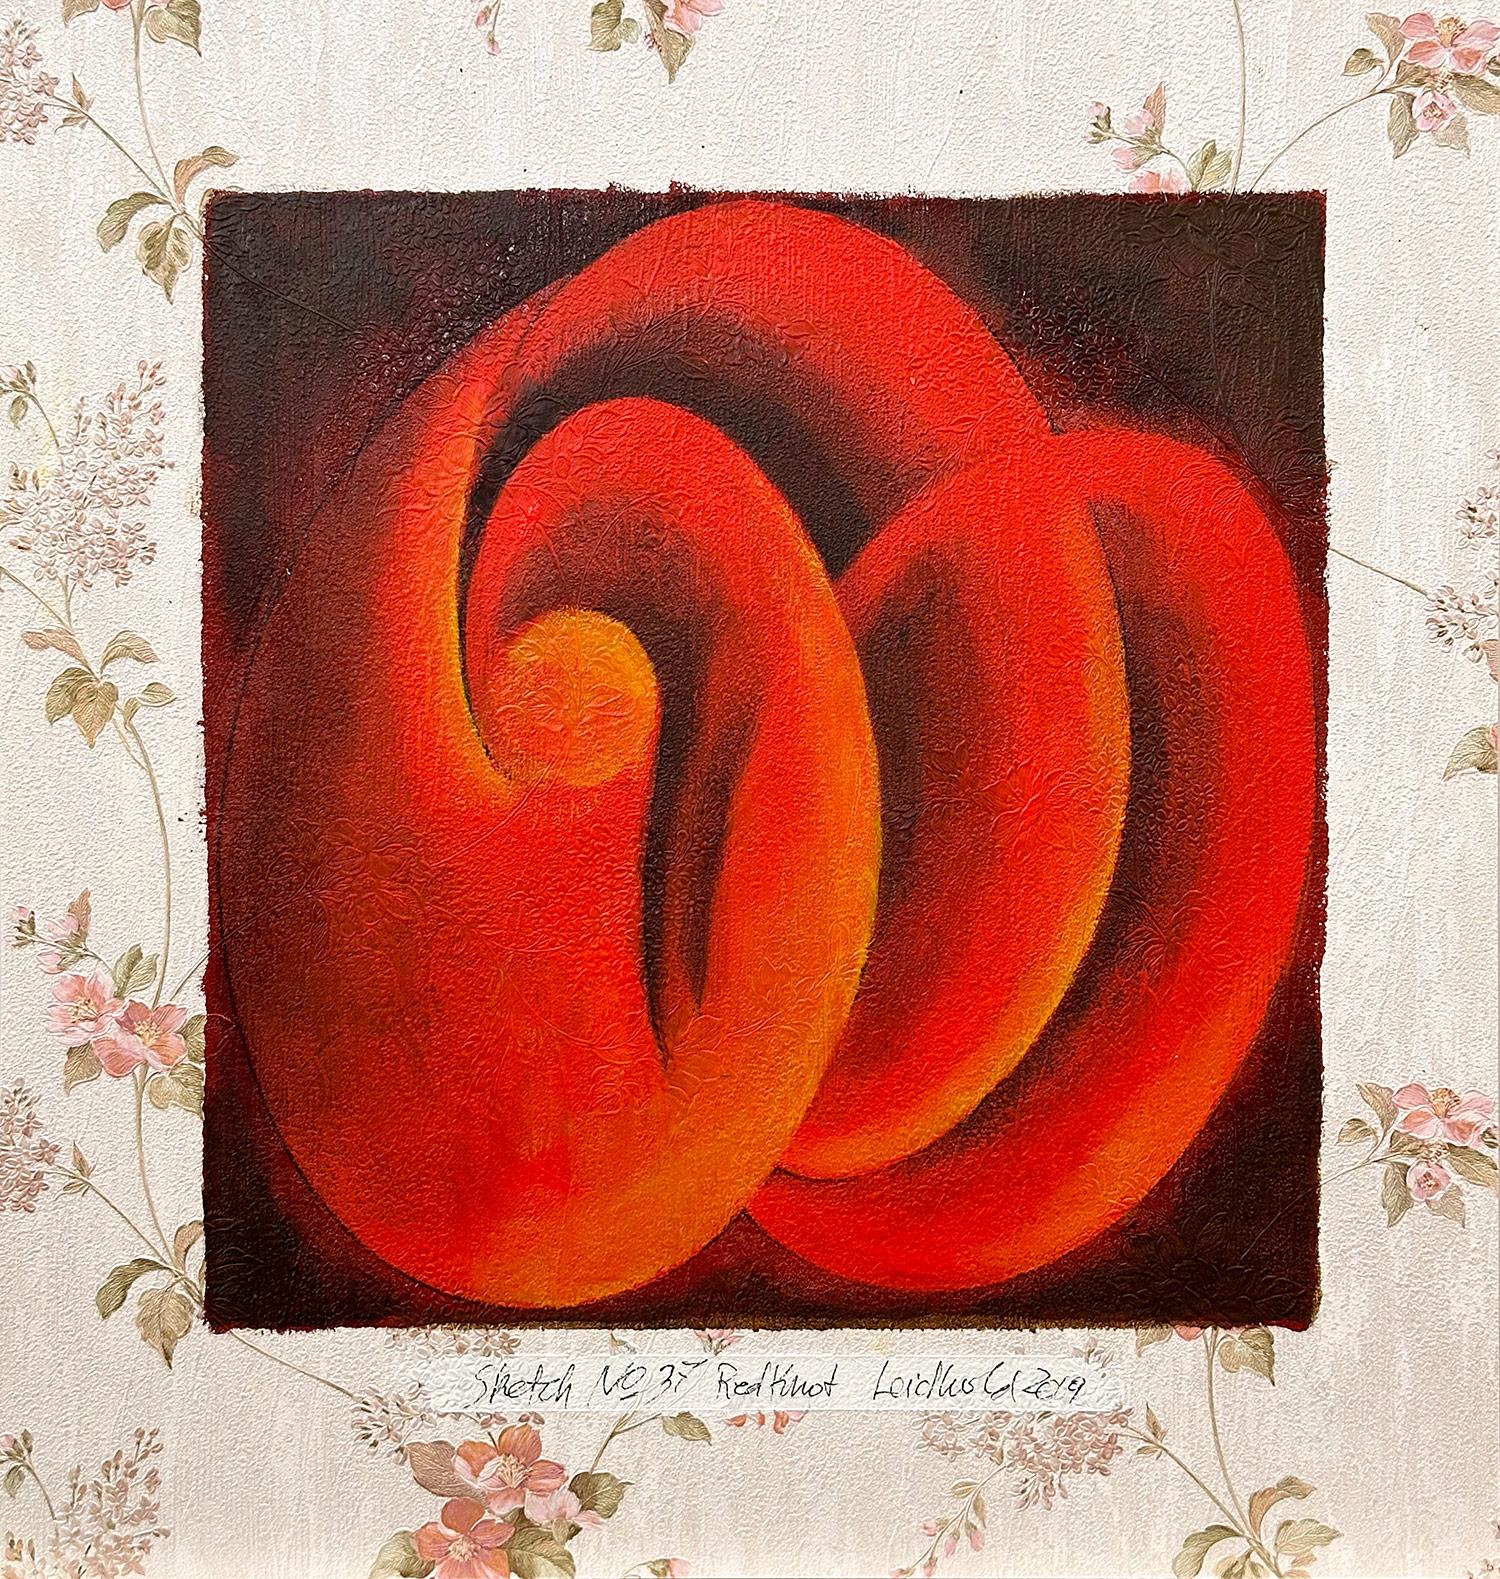 "Sketch n°37 Red Knot", peinture figurative abstraite sur papier peint